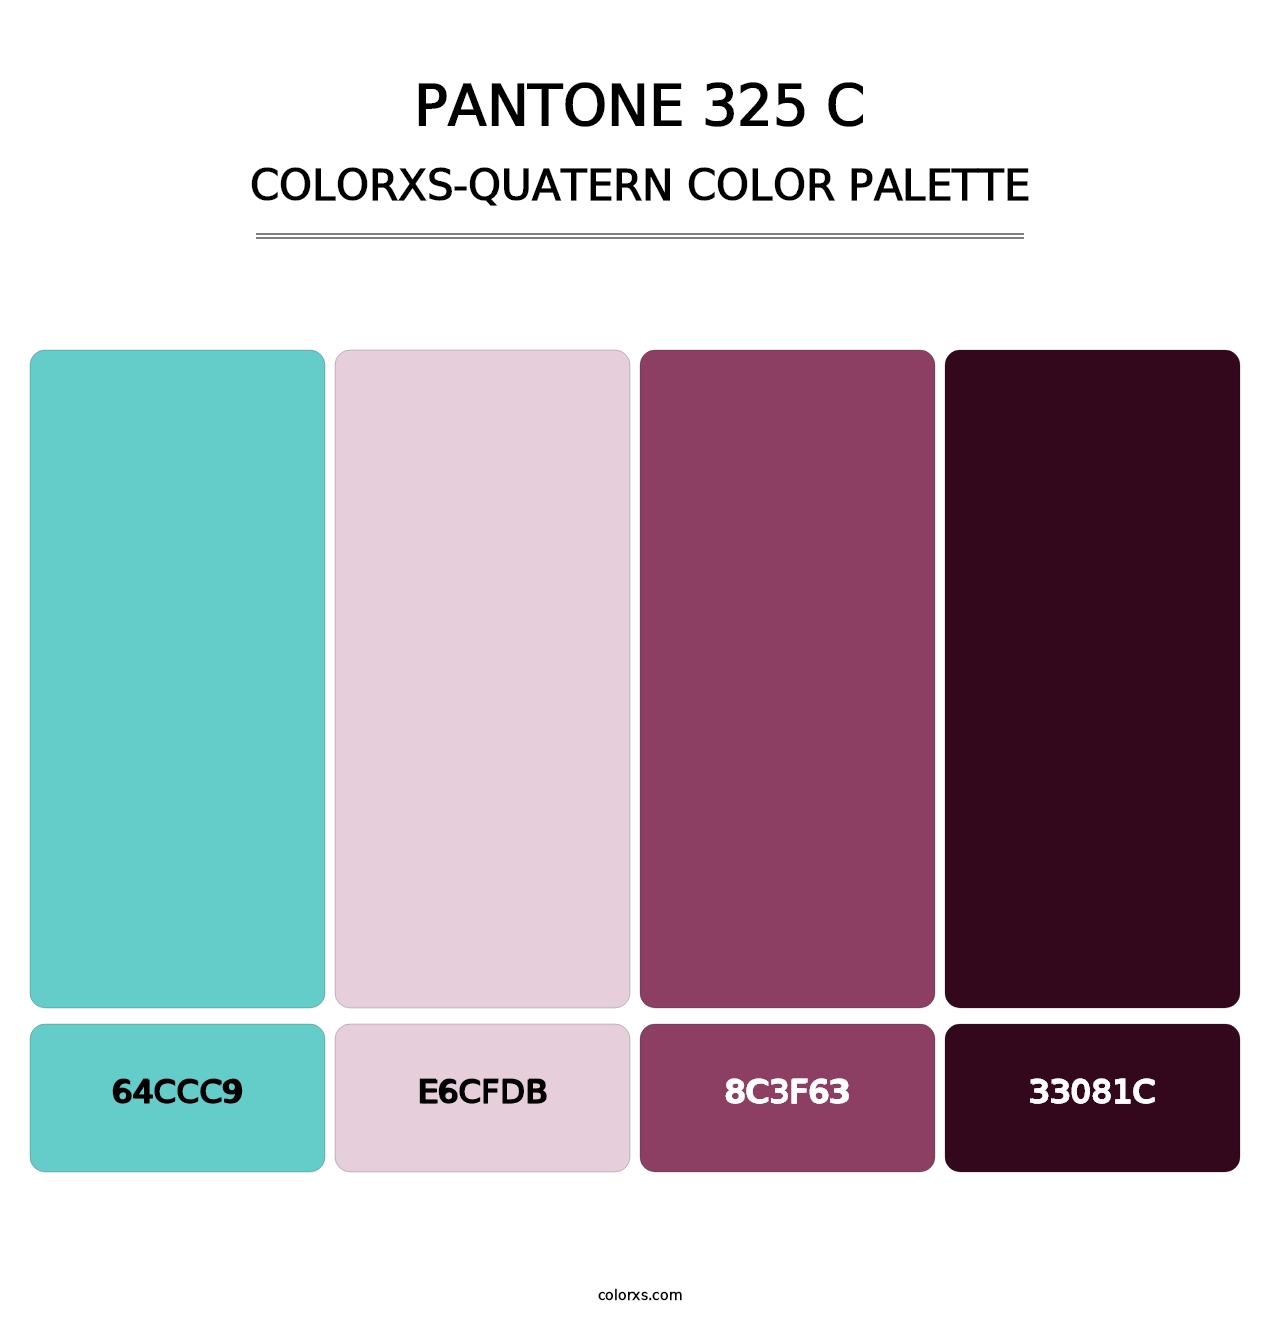 PANTONE 325 C - Colorxs Quatern Palette